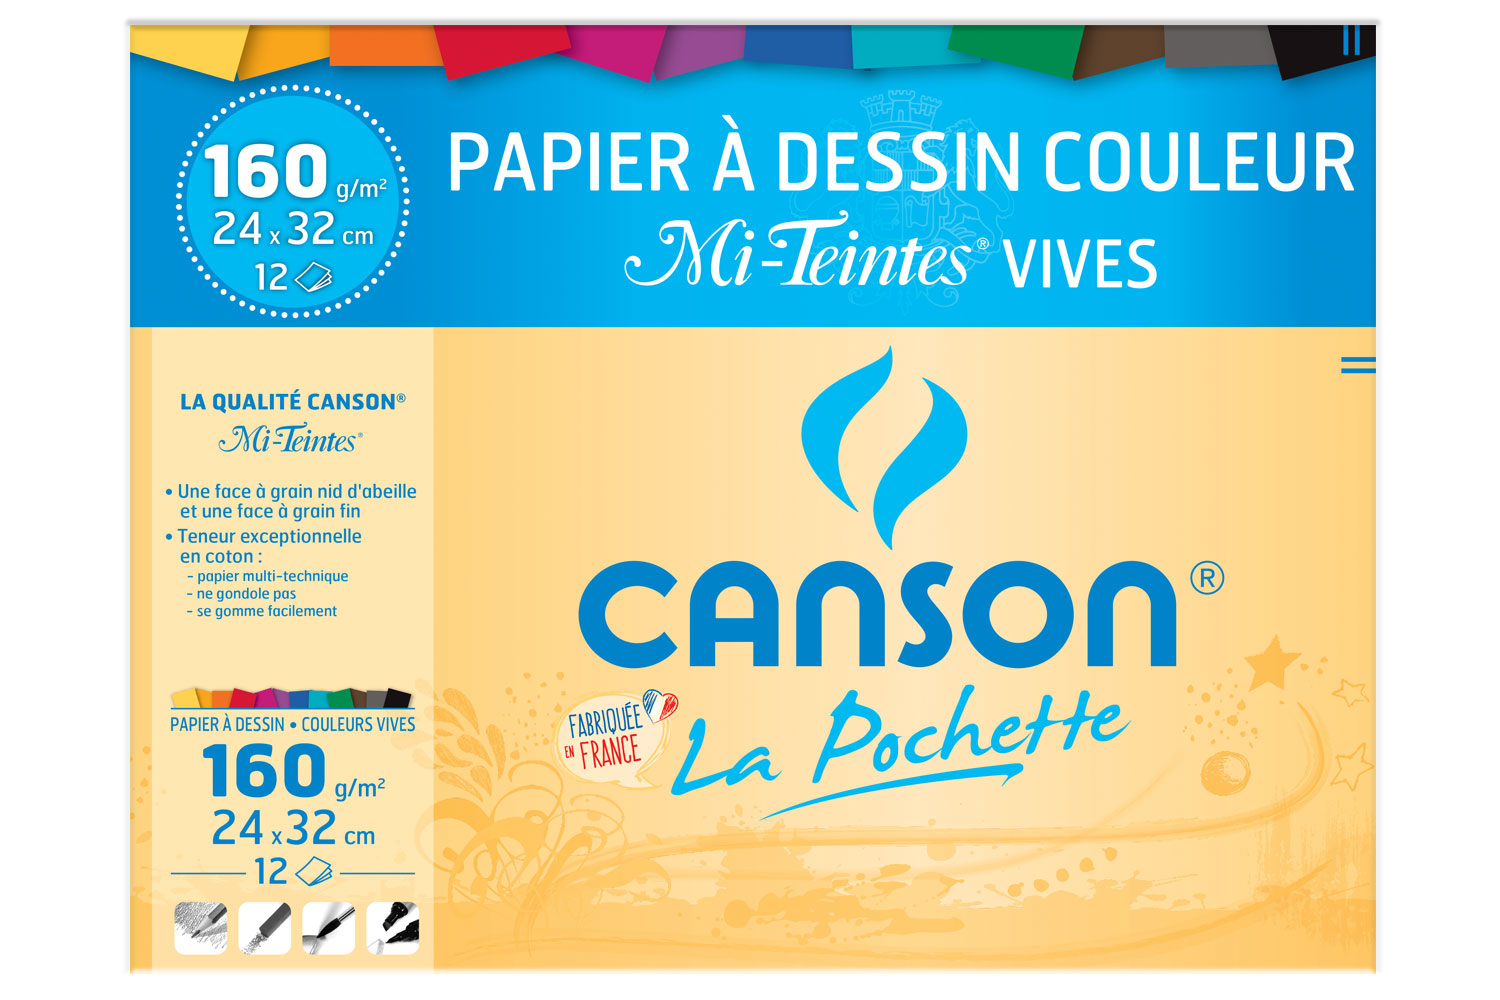 Ruban et ficelle de soie teints à la main aux couleurs de l'arc-en-ciel -   France